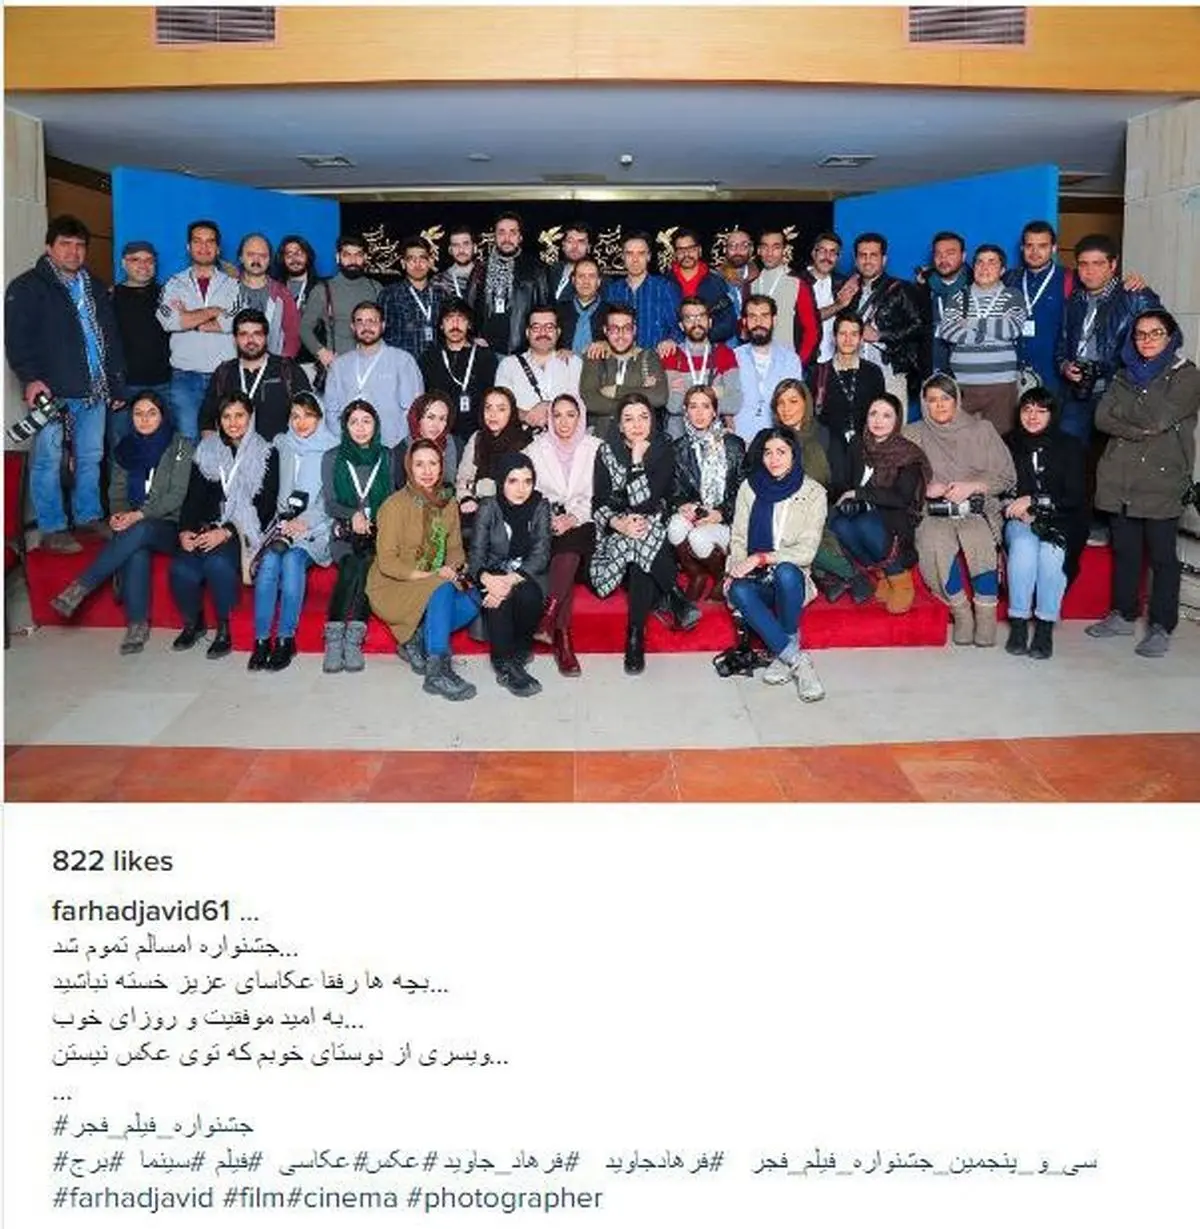 عکس دسته جمعی عکاسان در آخرین روز جشنواره فیلم فجر (عکس)